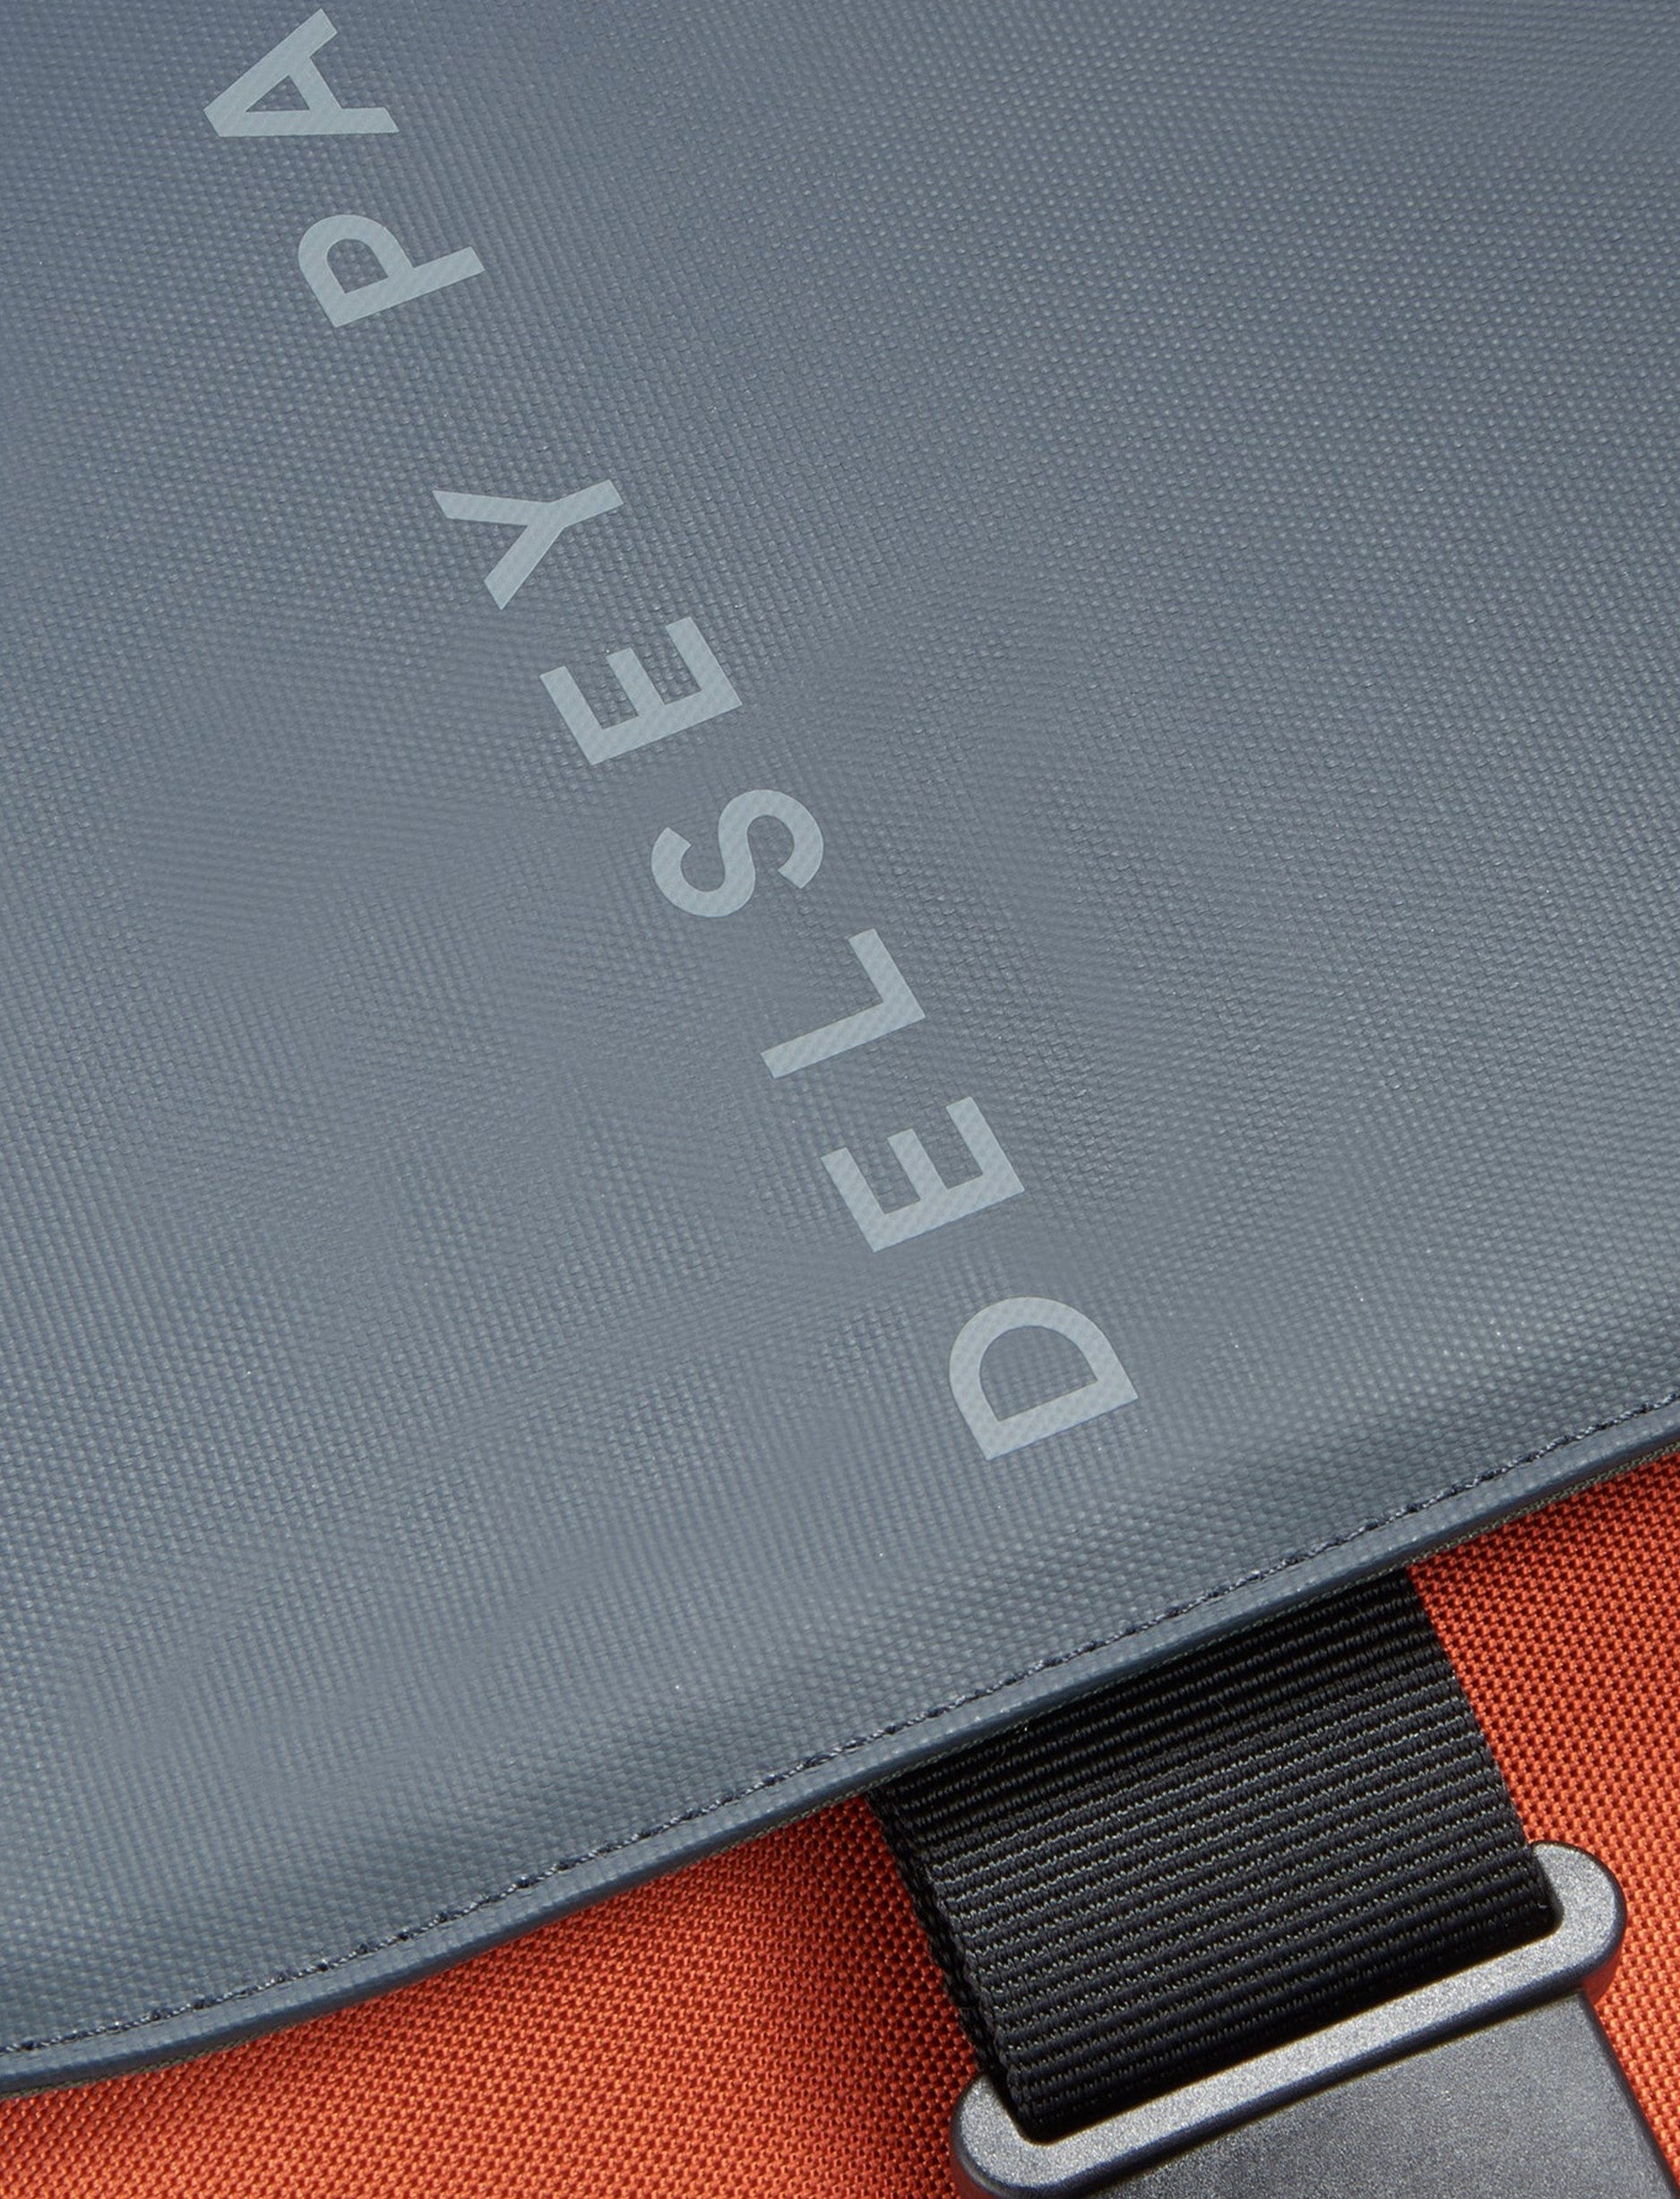 Delsey Securflap - תיק גב דלסי למחשב נייד '15 בצבע כתום